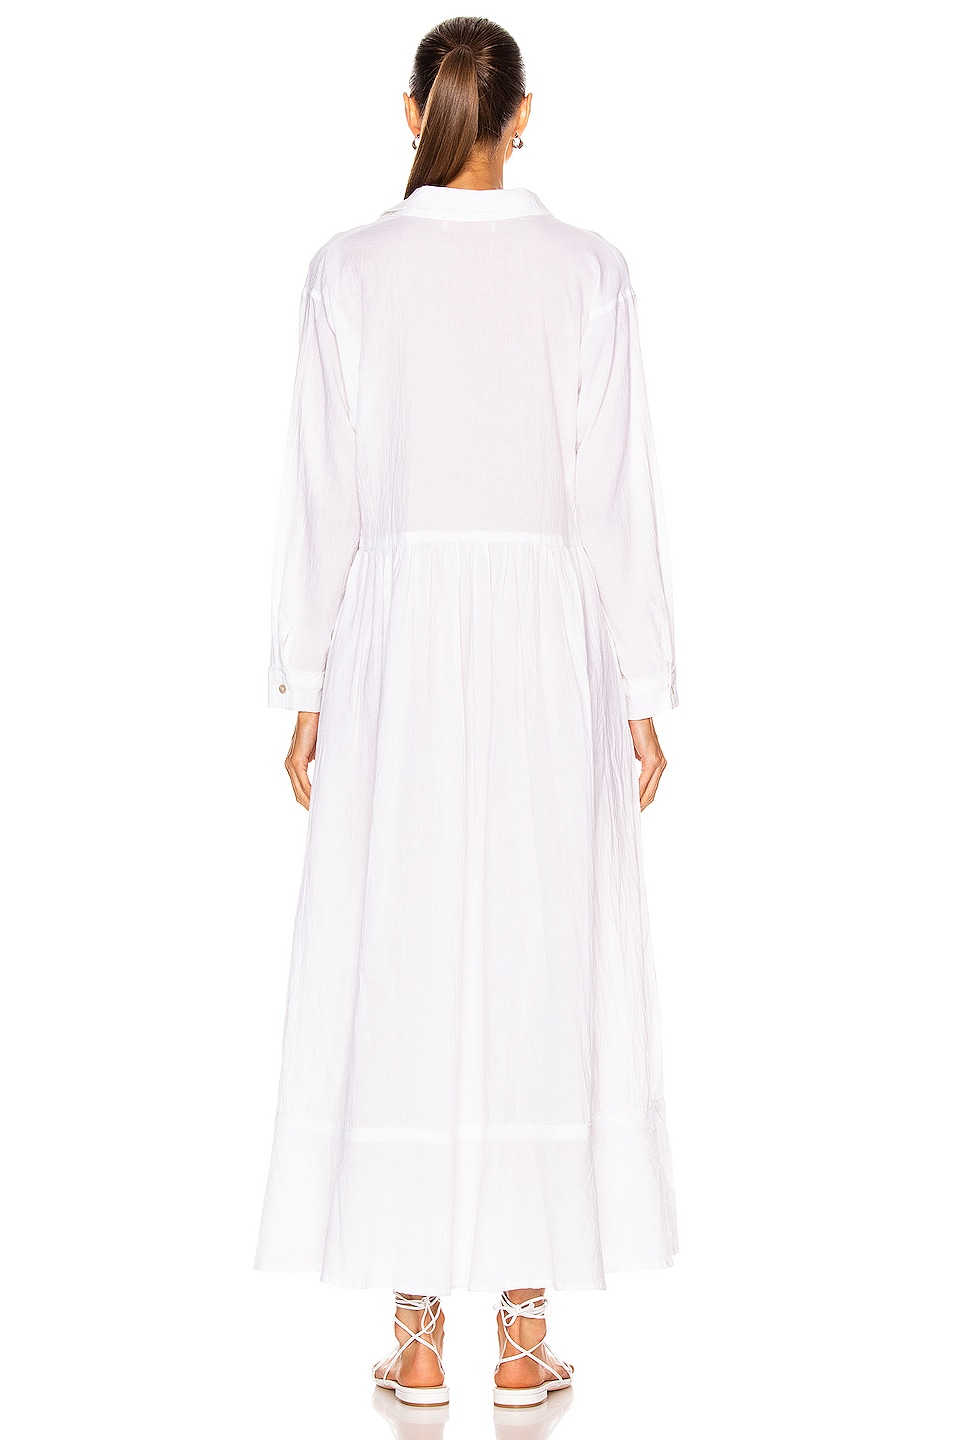 Natalie Martin Heath Dress in Flat Cotton White | FWRD